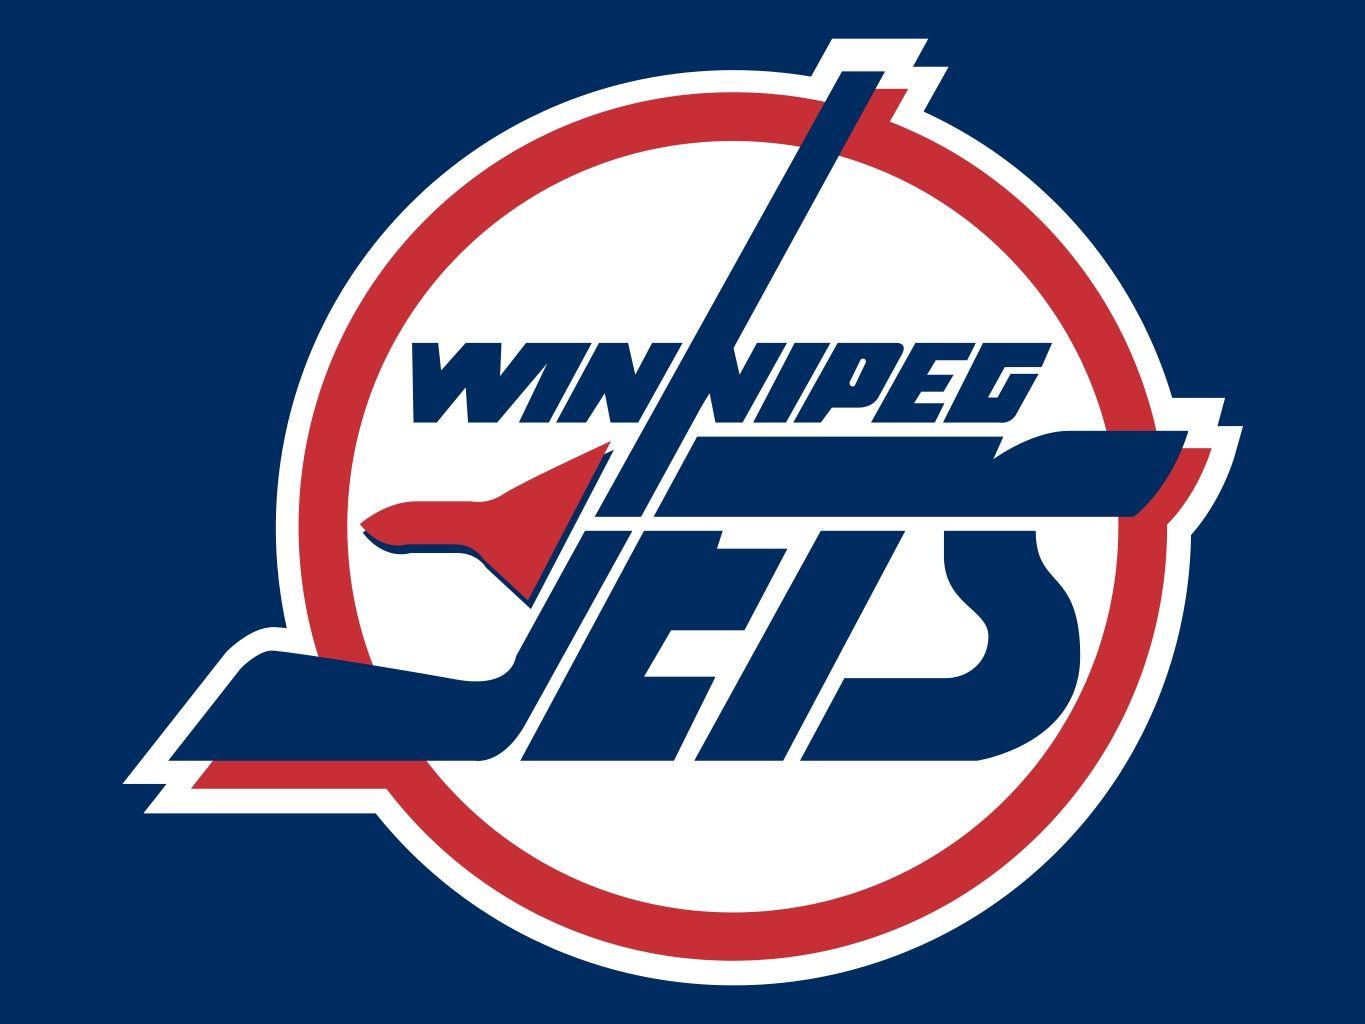 Winnipeg Jets Old Logo - Winnipeg Jets (original). Pro Sports Teams